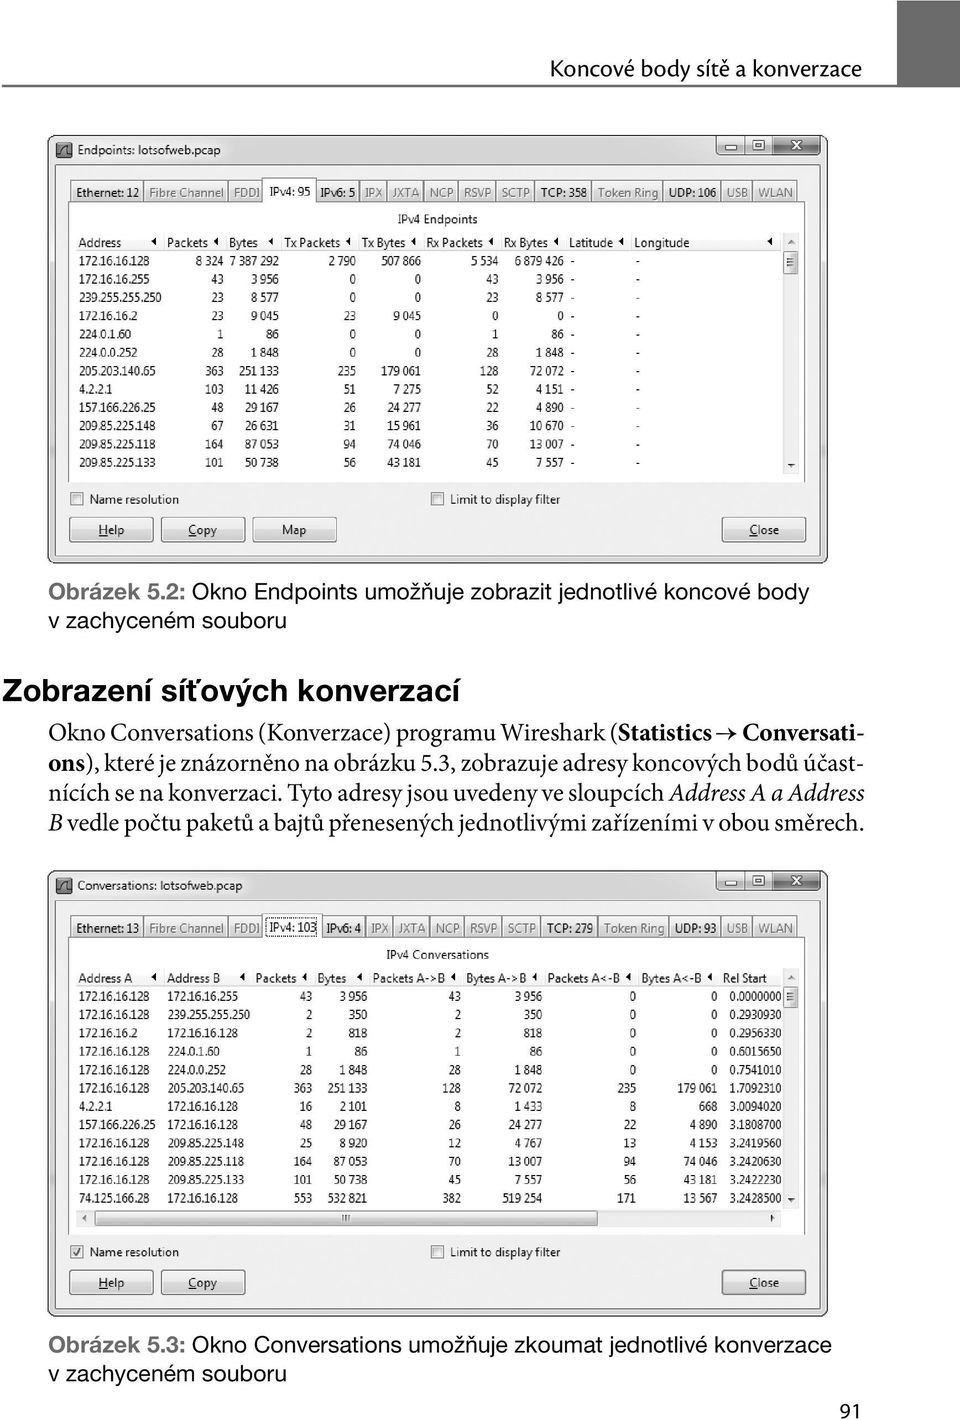 (Konverzace) programu Wireshark (Statistics Conversations), které je znázorněno na obrázku 5.